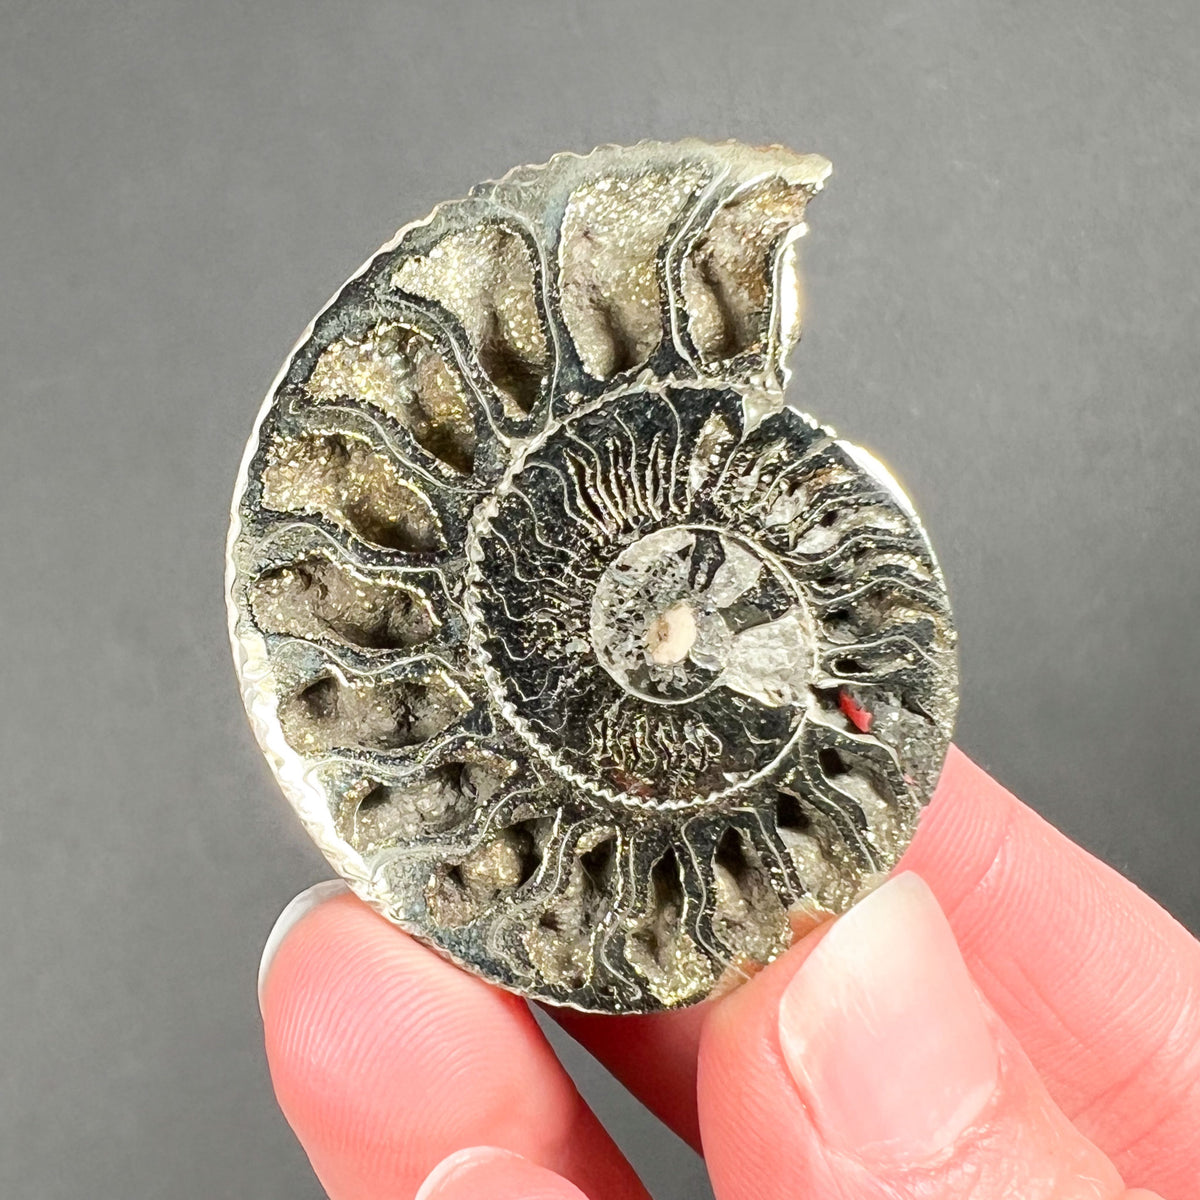 Naturally Pyrite Coated Ammonite